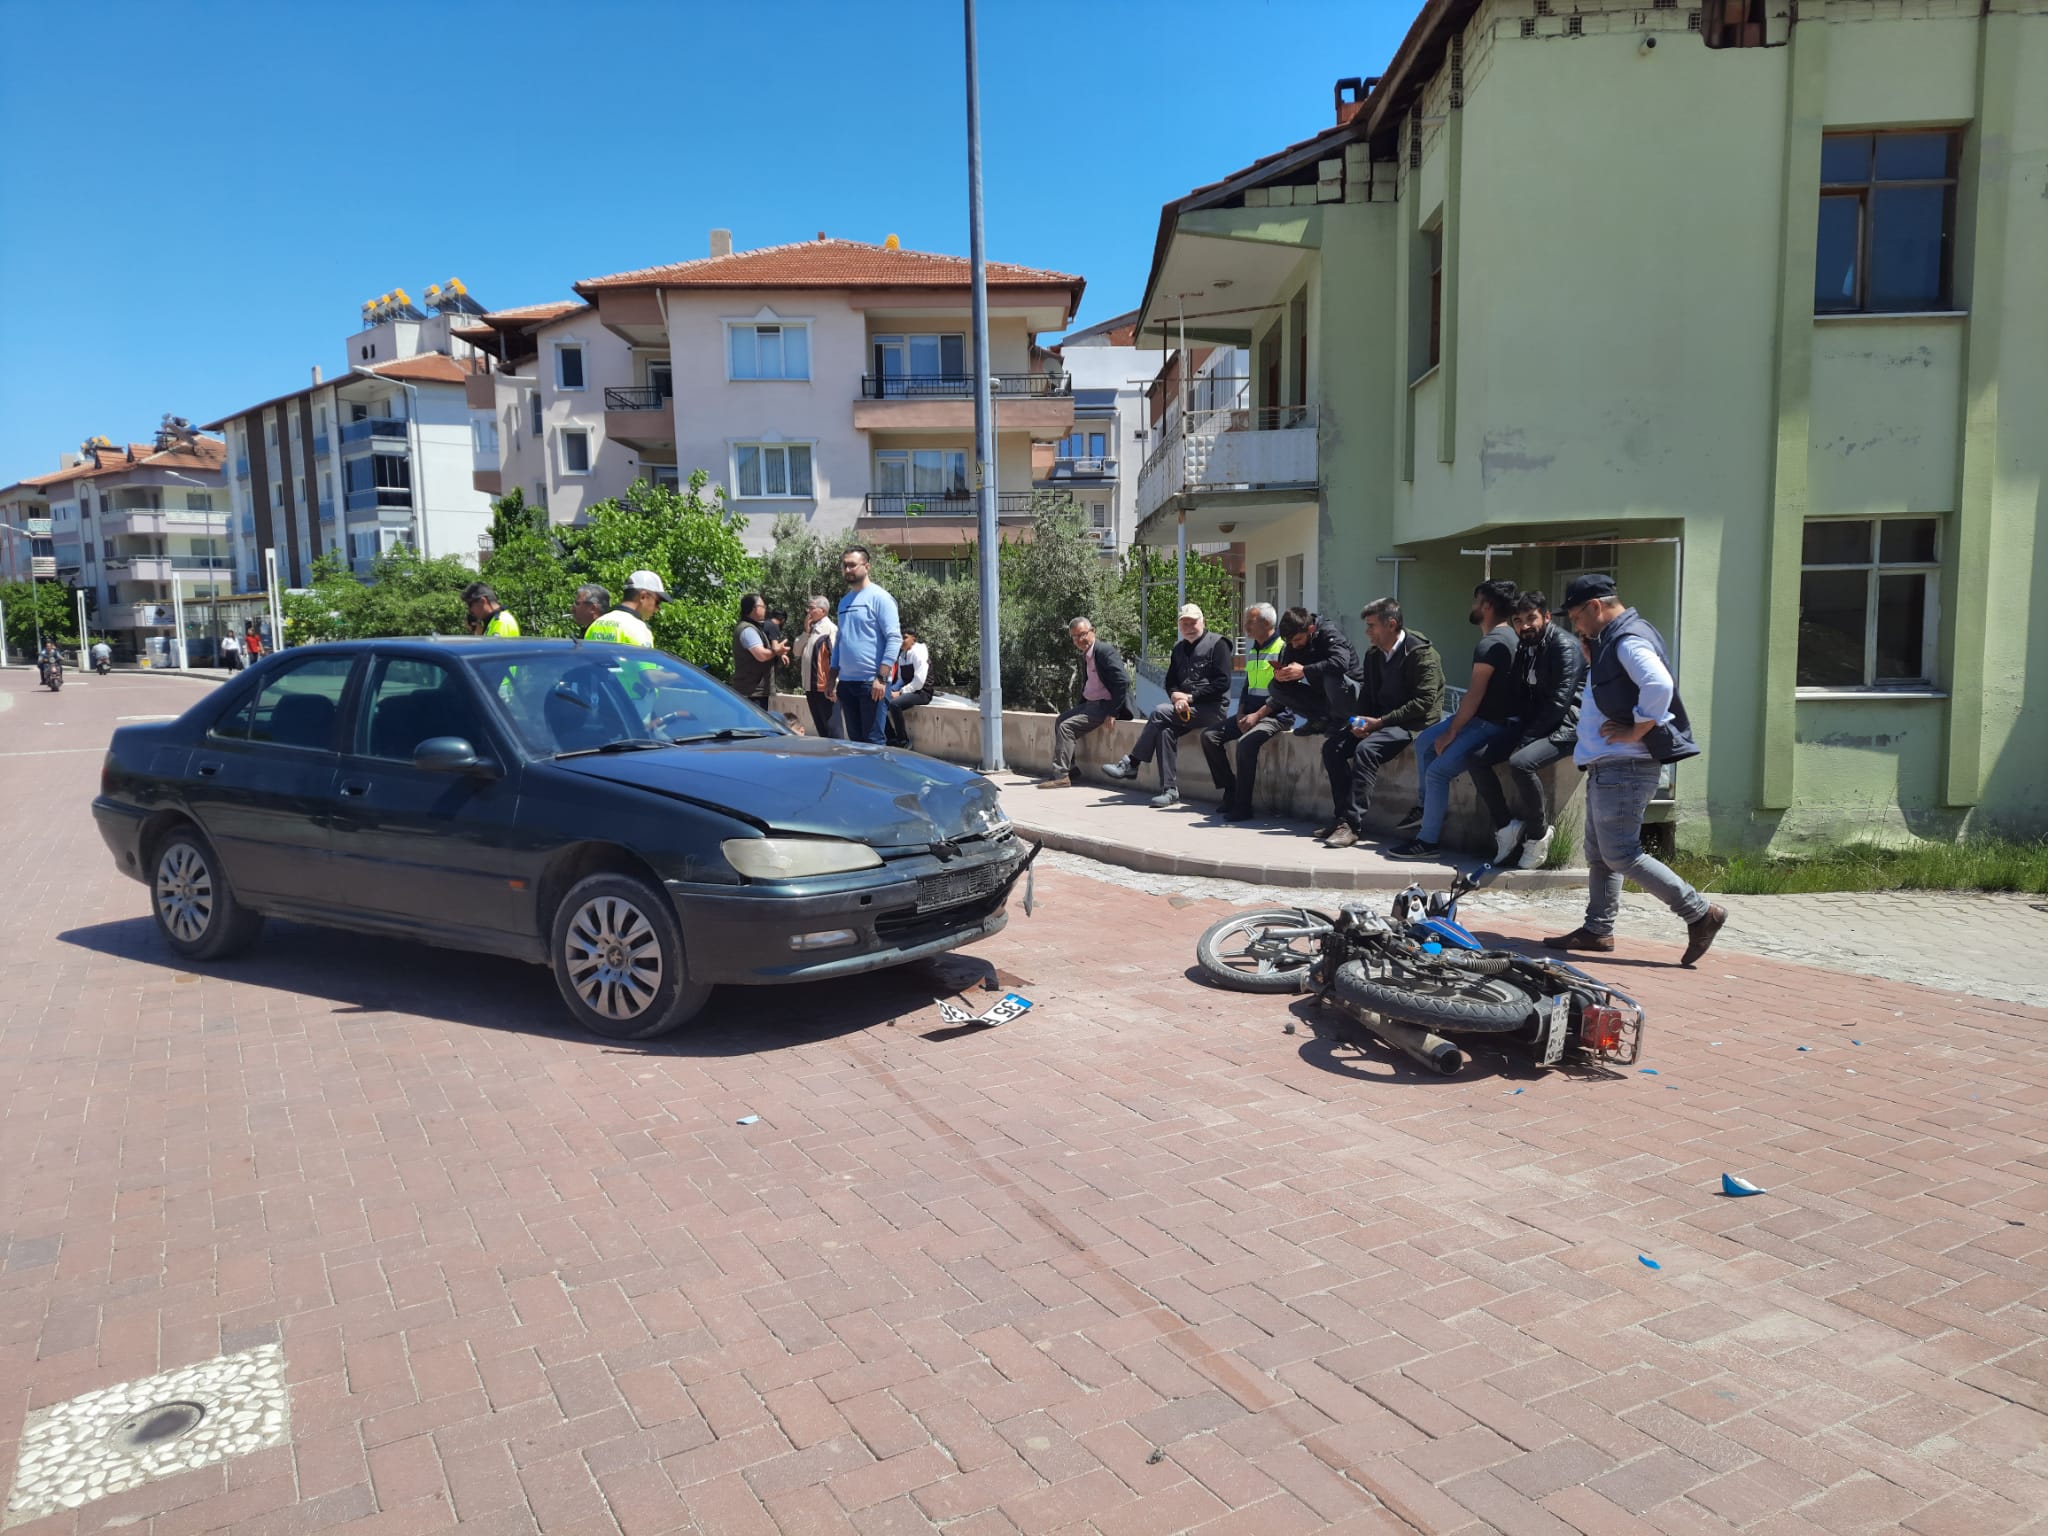 Manisa'nın Kula ilçesinde otomobille motosikletin çarpışması sonucu 1 kişi yaralandı.